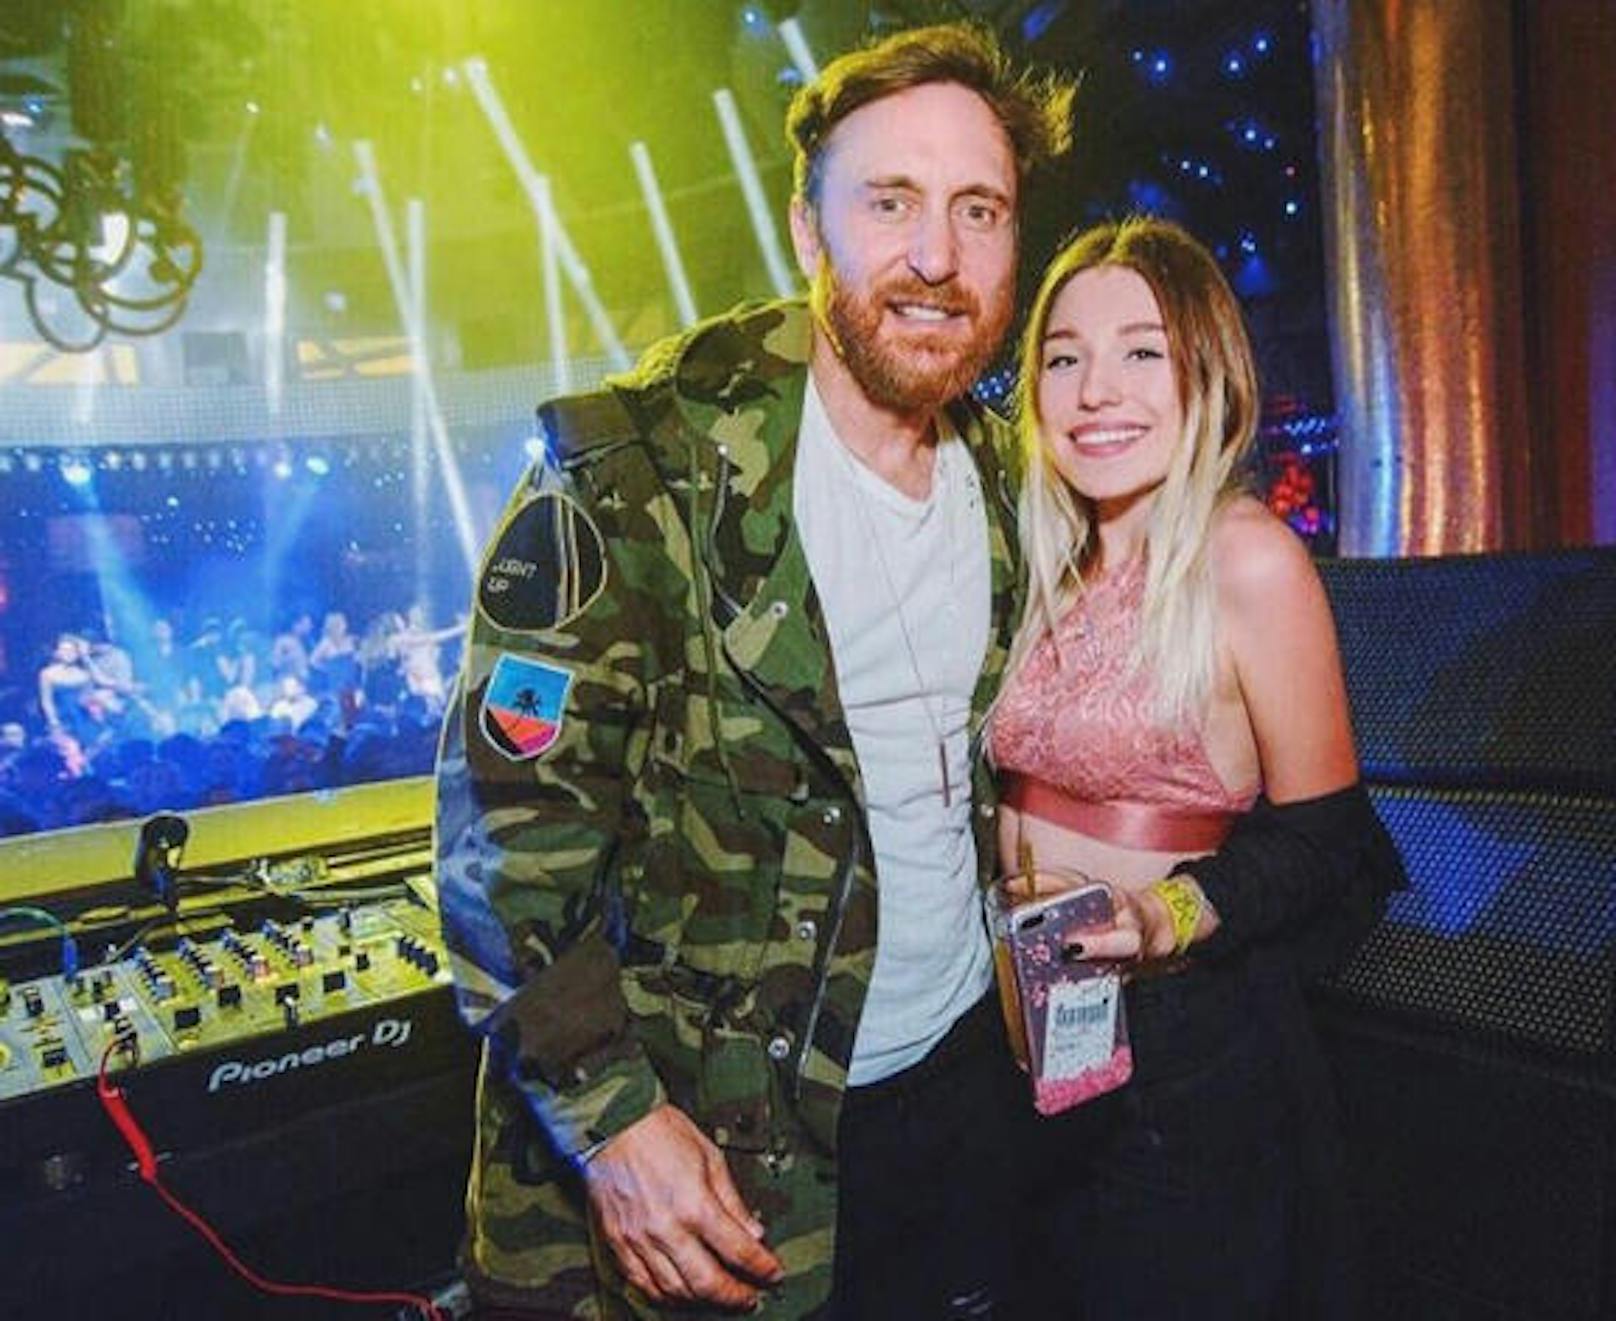 25.04.2017: Der DJ und die Instagram-Prinzessin. Die deutsche Superbloggerin Bibi besuchte in Las Vegas ein Konzert des französischen Star-DJs David Guetta.